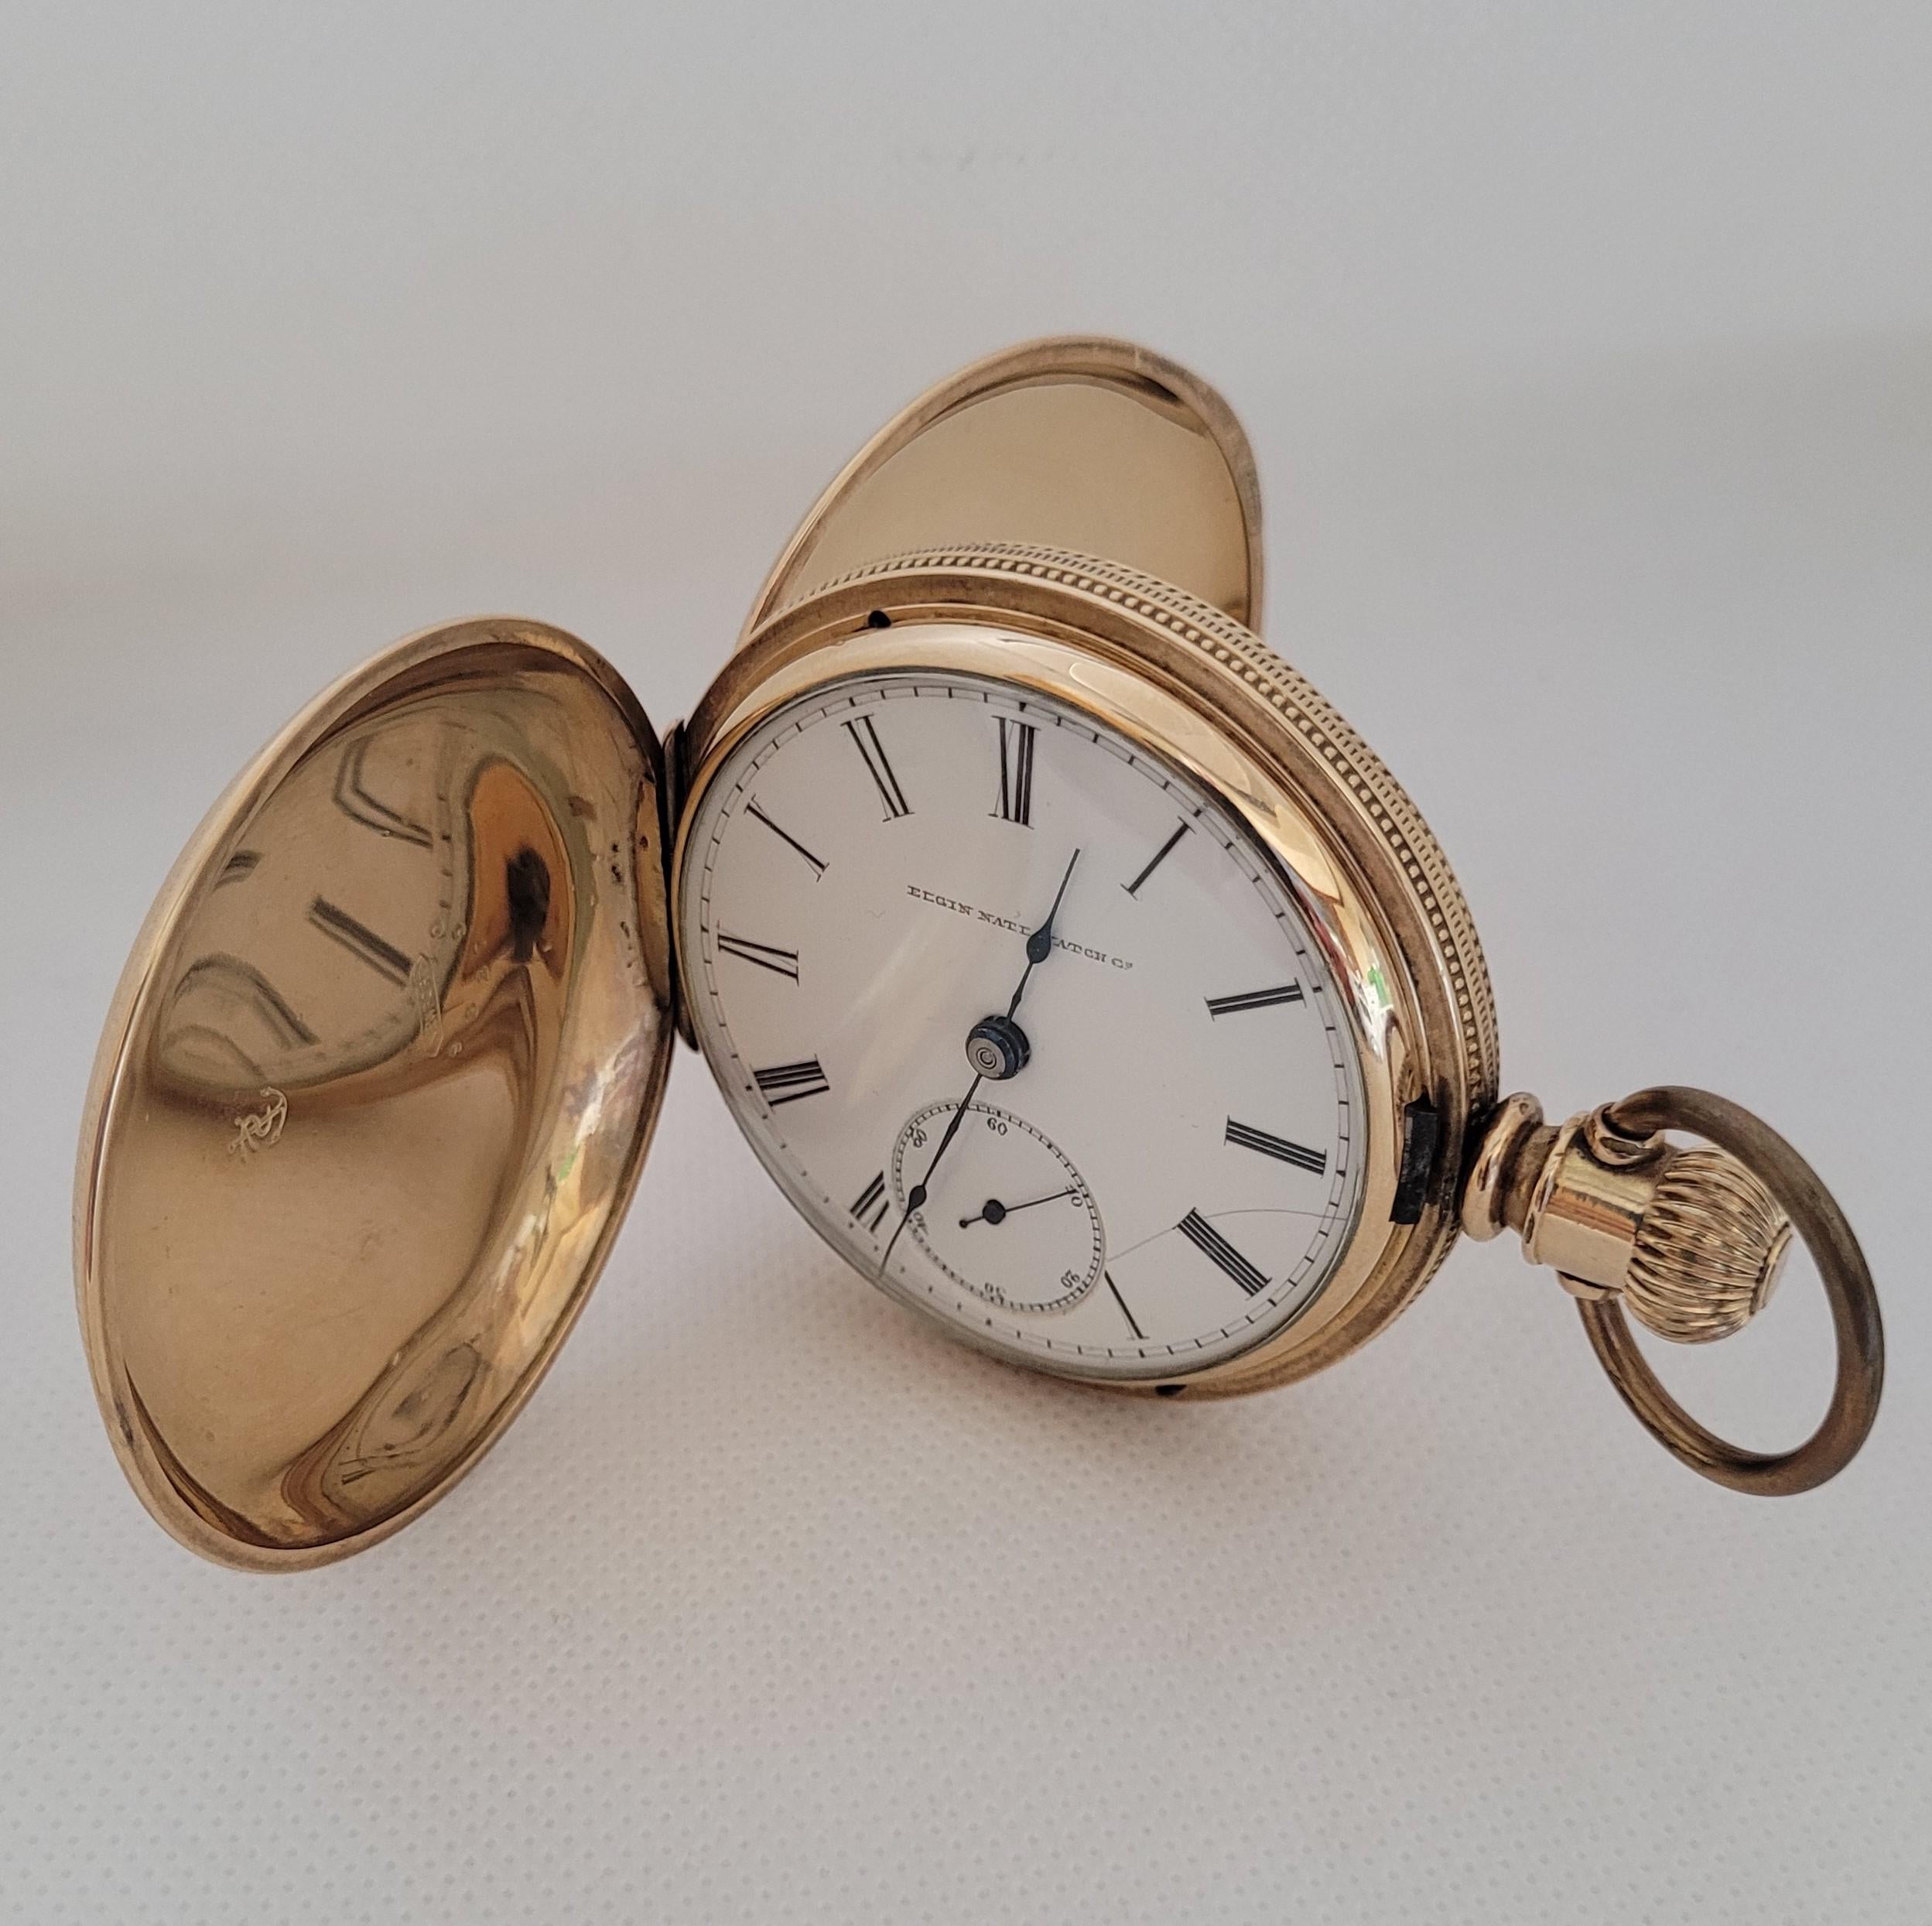 Vergoldete Elgin National Watch Co. 53mm Taschenuhr, weißes Zifferblatt, schwarze römische Ziffern, die vollständig gereinigt und gewartet wurde und eine 90-tägige Garantie beinhaltet. Das Zifferblatt der Uhr hat einen Haarriss. Das Gehäuse ist